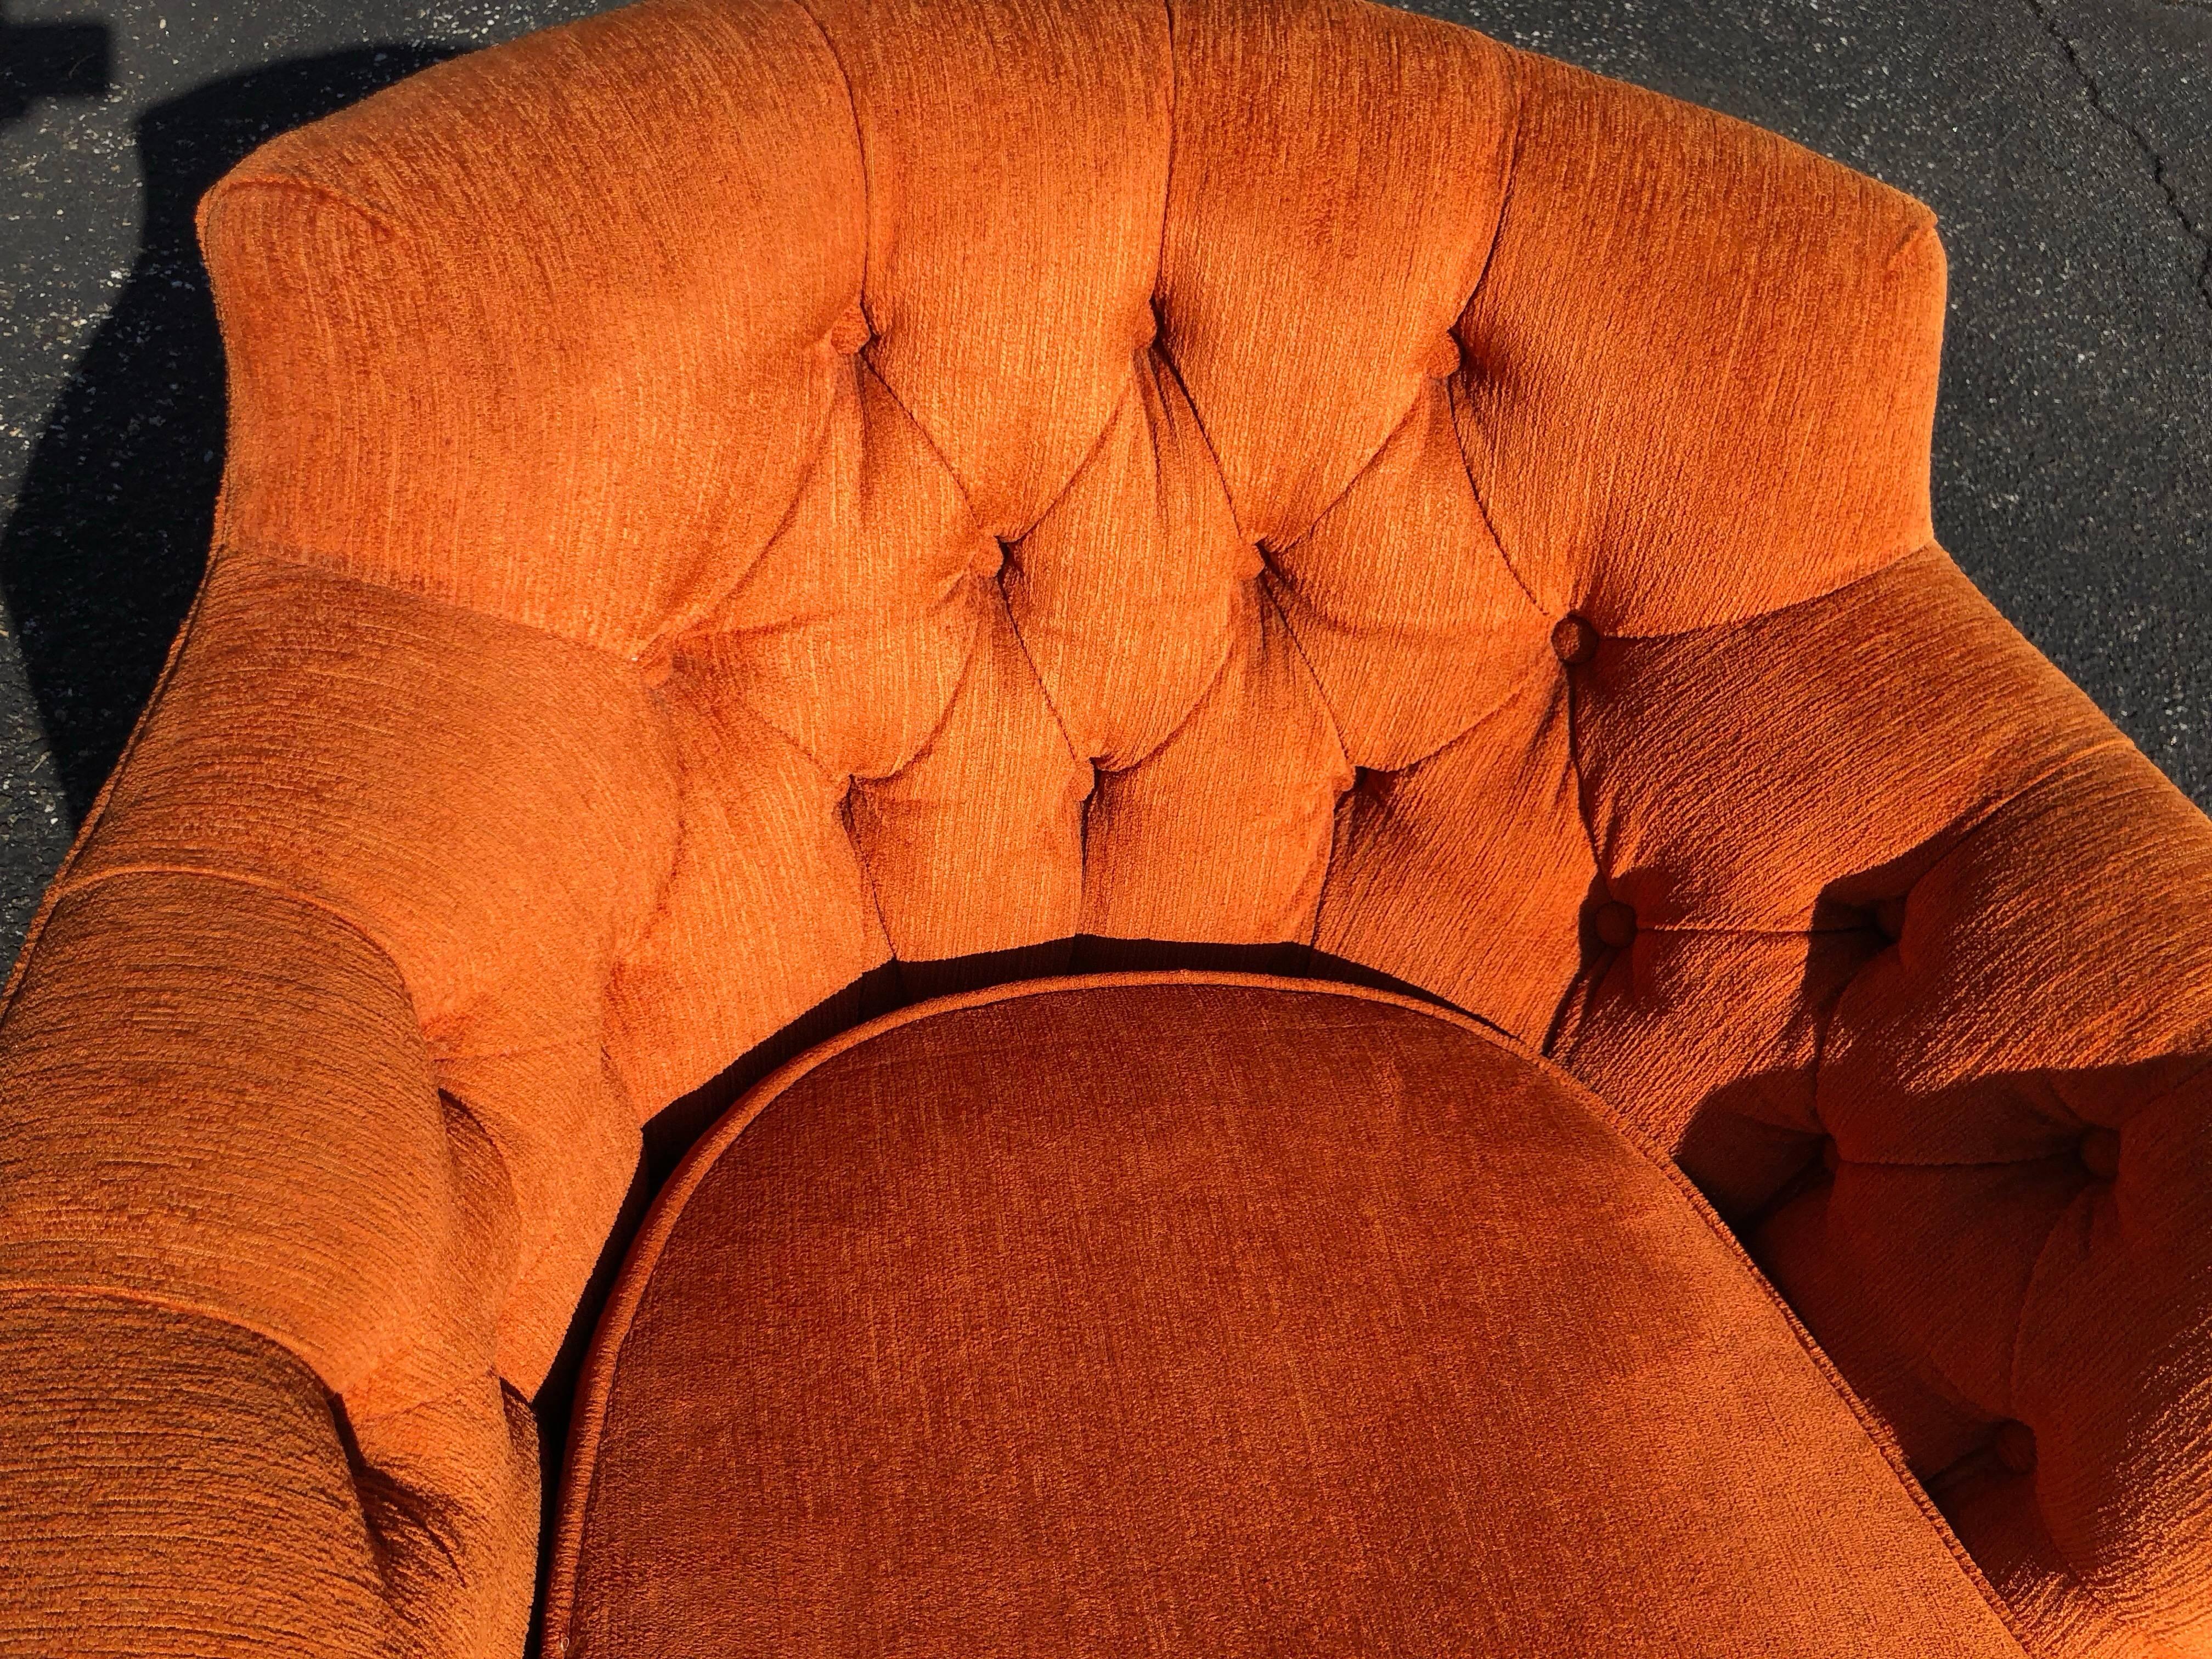 American Hollywood Regency Tufted Orange Club Chair